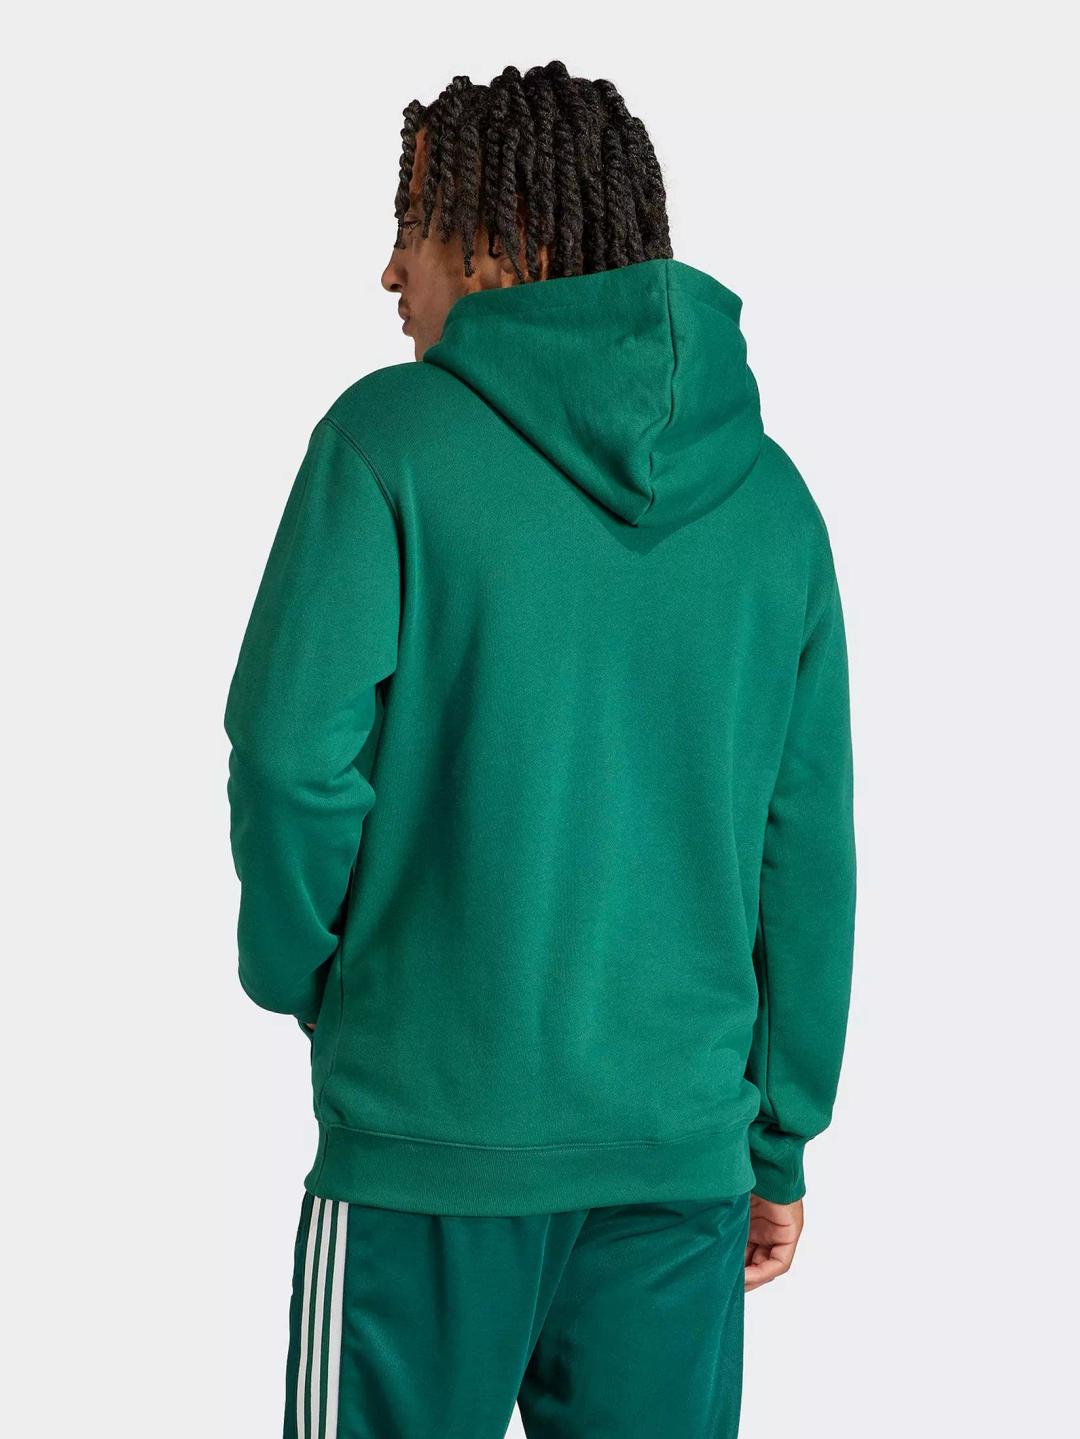 Hoodie Adidas Green